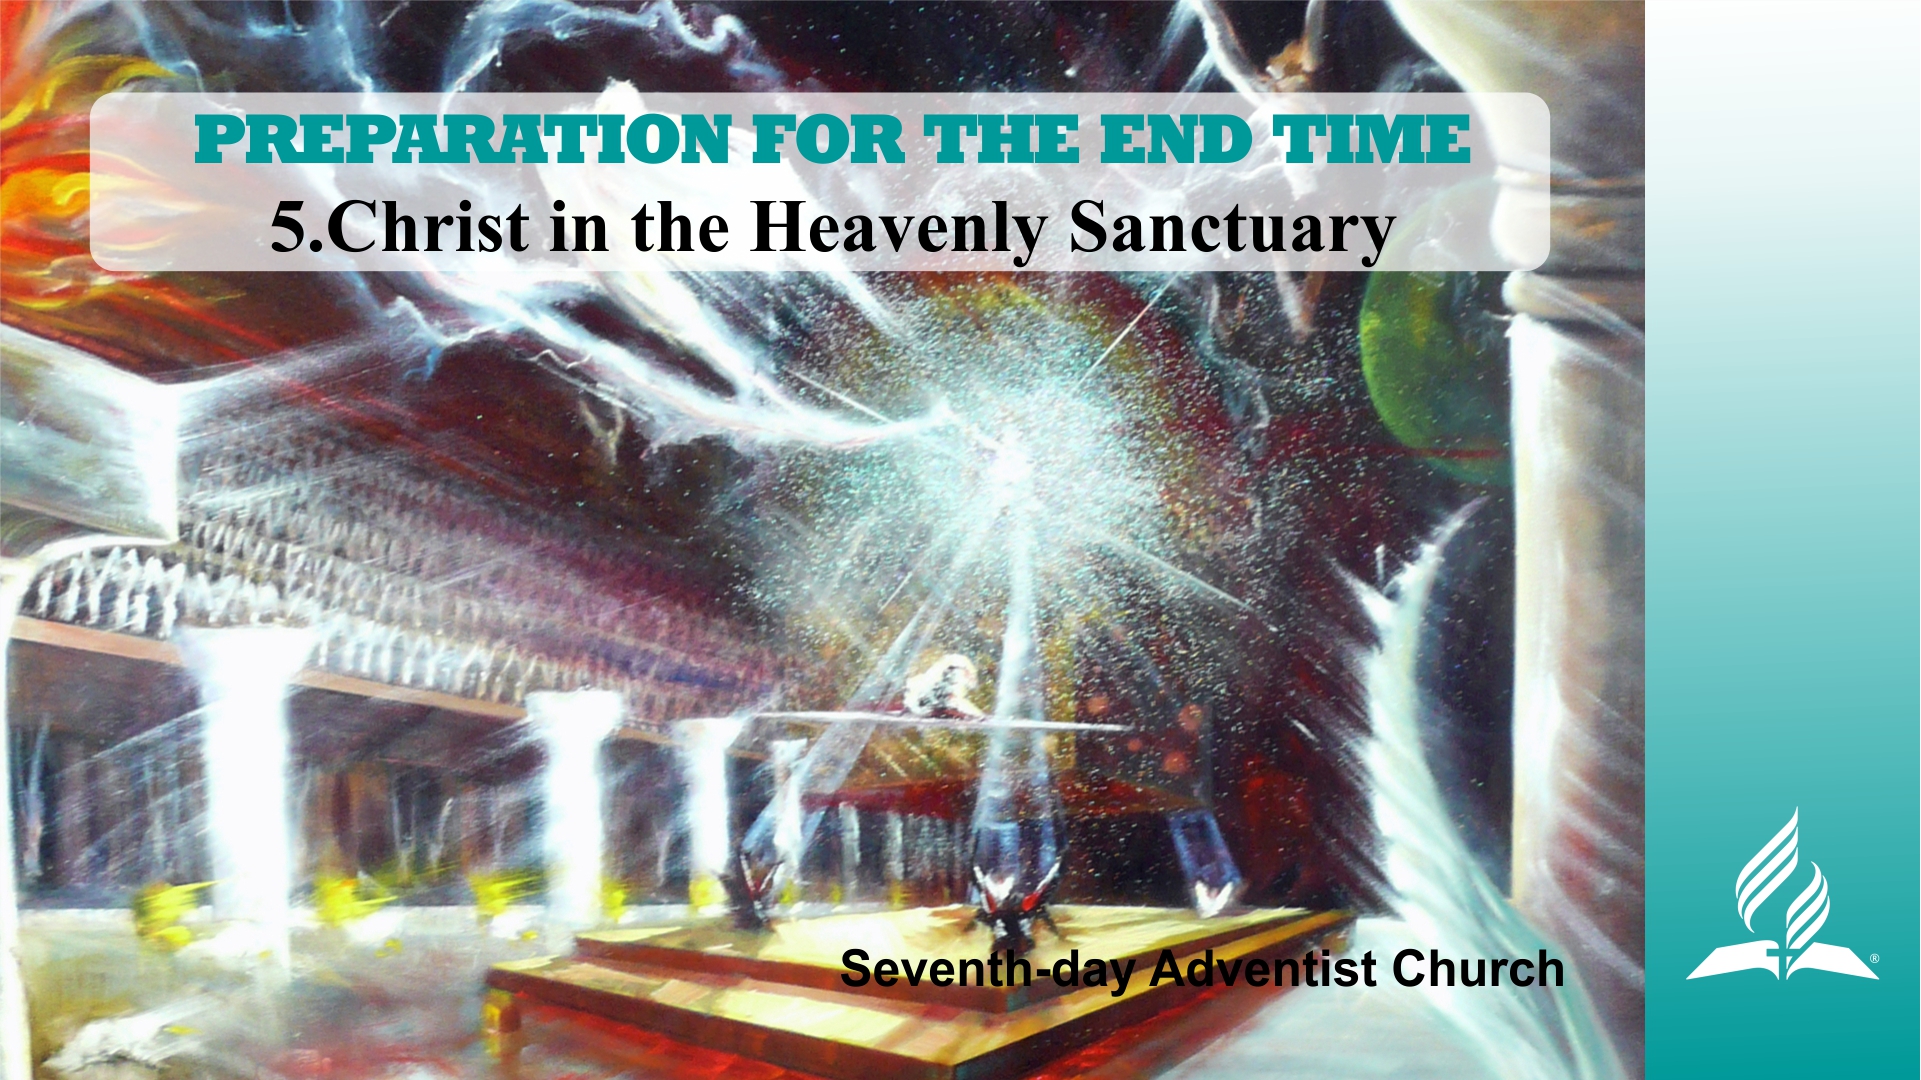 heavenly sanctuary sda